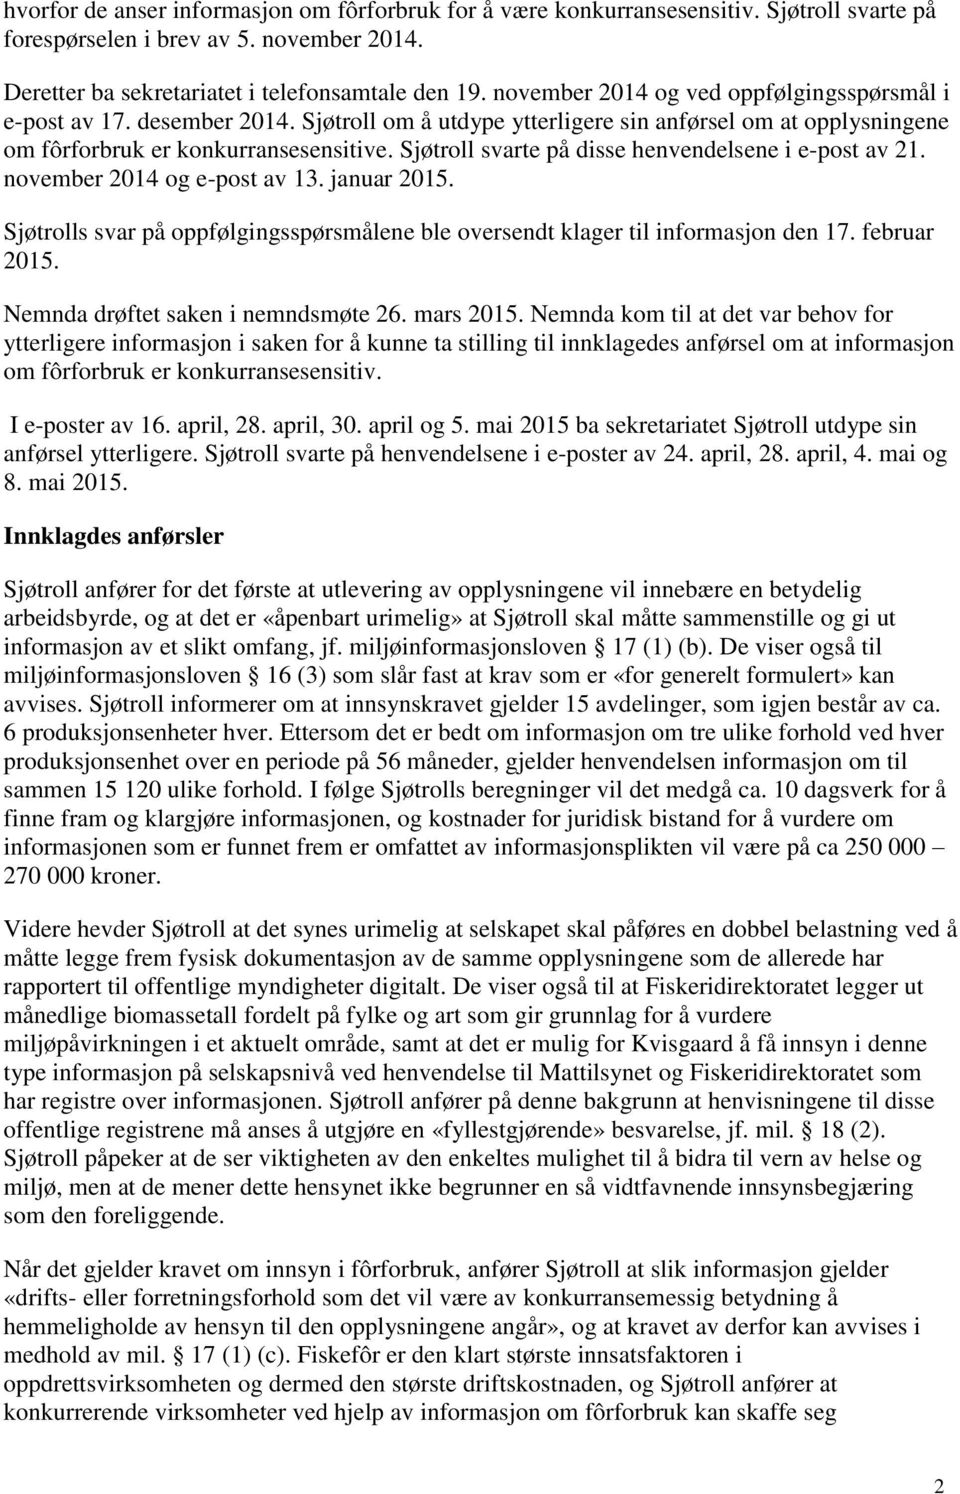 Sjøtroll svarte på disse henvendelsene i e-post av 21. november 2014 og e-post av 13. januar 2015. Sjøtrolls svar på oppfølgingsspørsmålene ble oversendt klager til informasjon den 17. februar 2015.